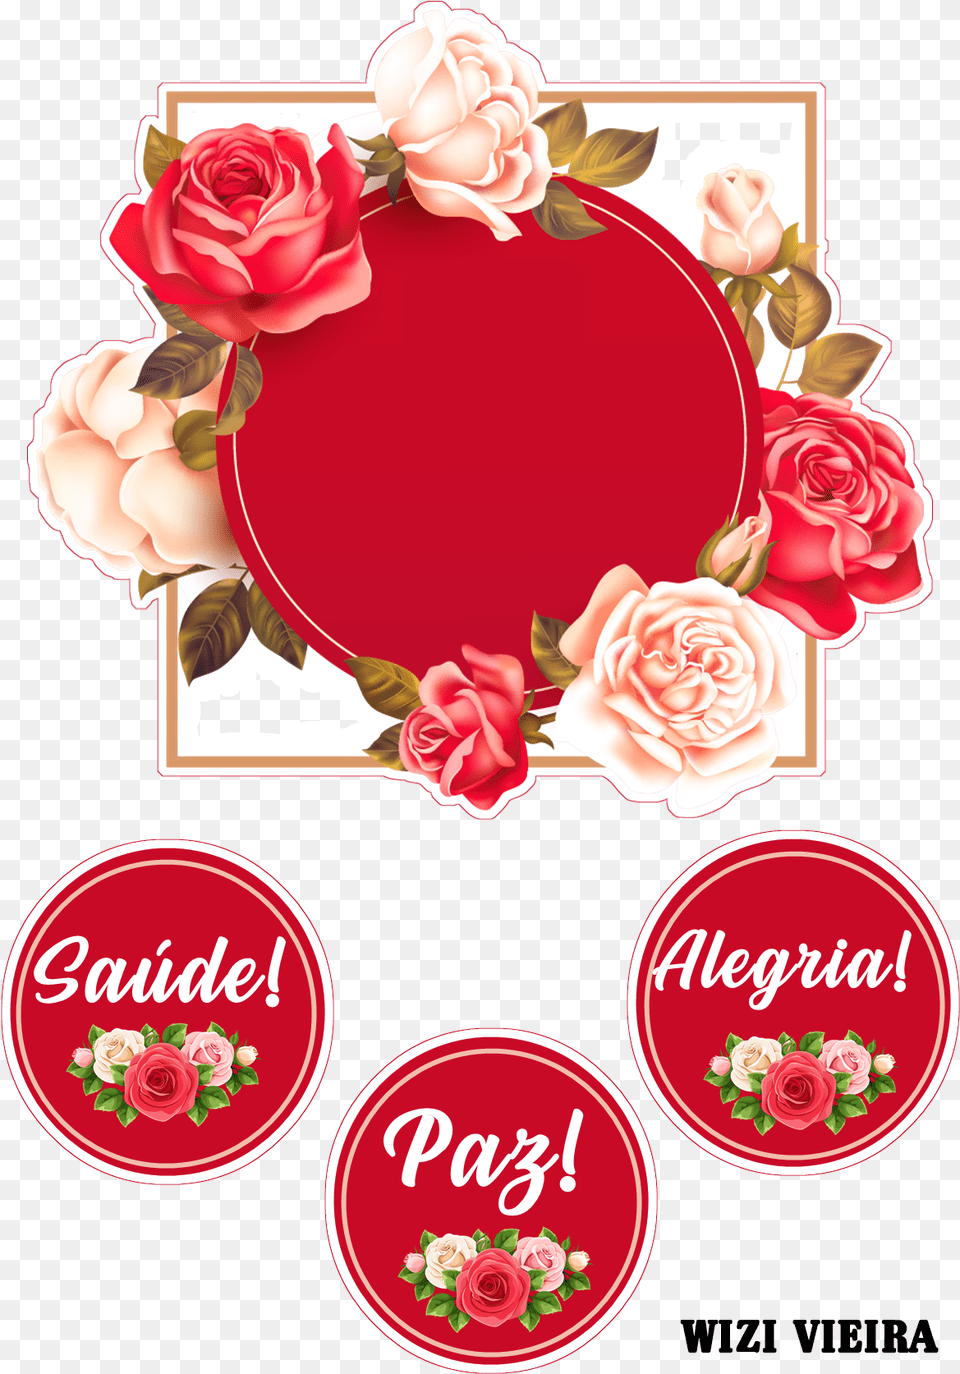 Topo De Bolo Amor Paz Alegria, Flower, Plant, Rose, Envelope Png Image